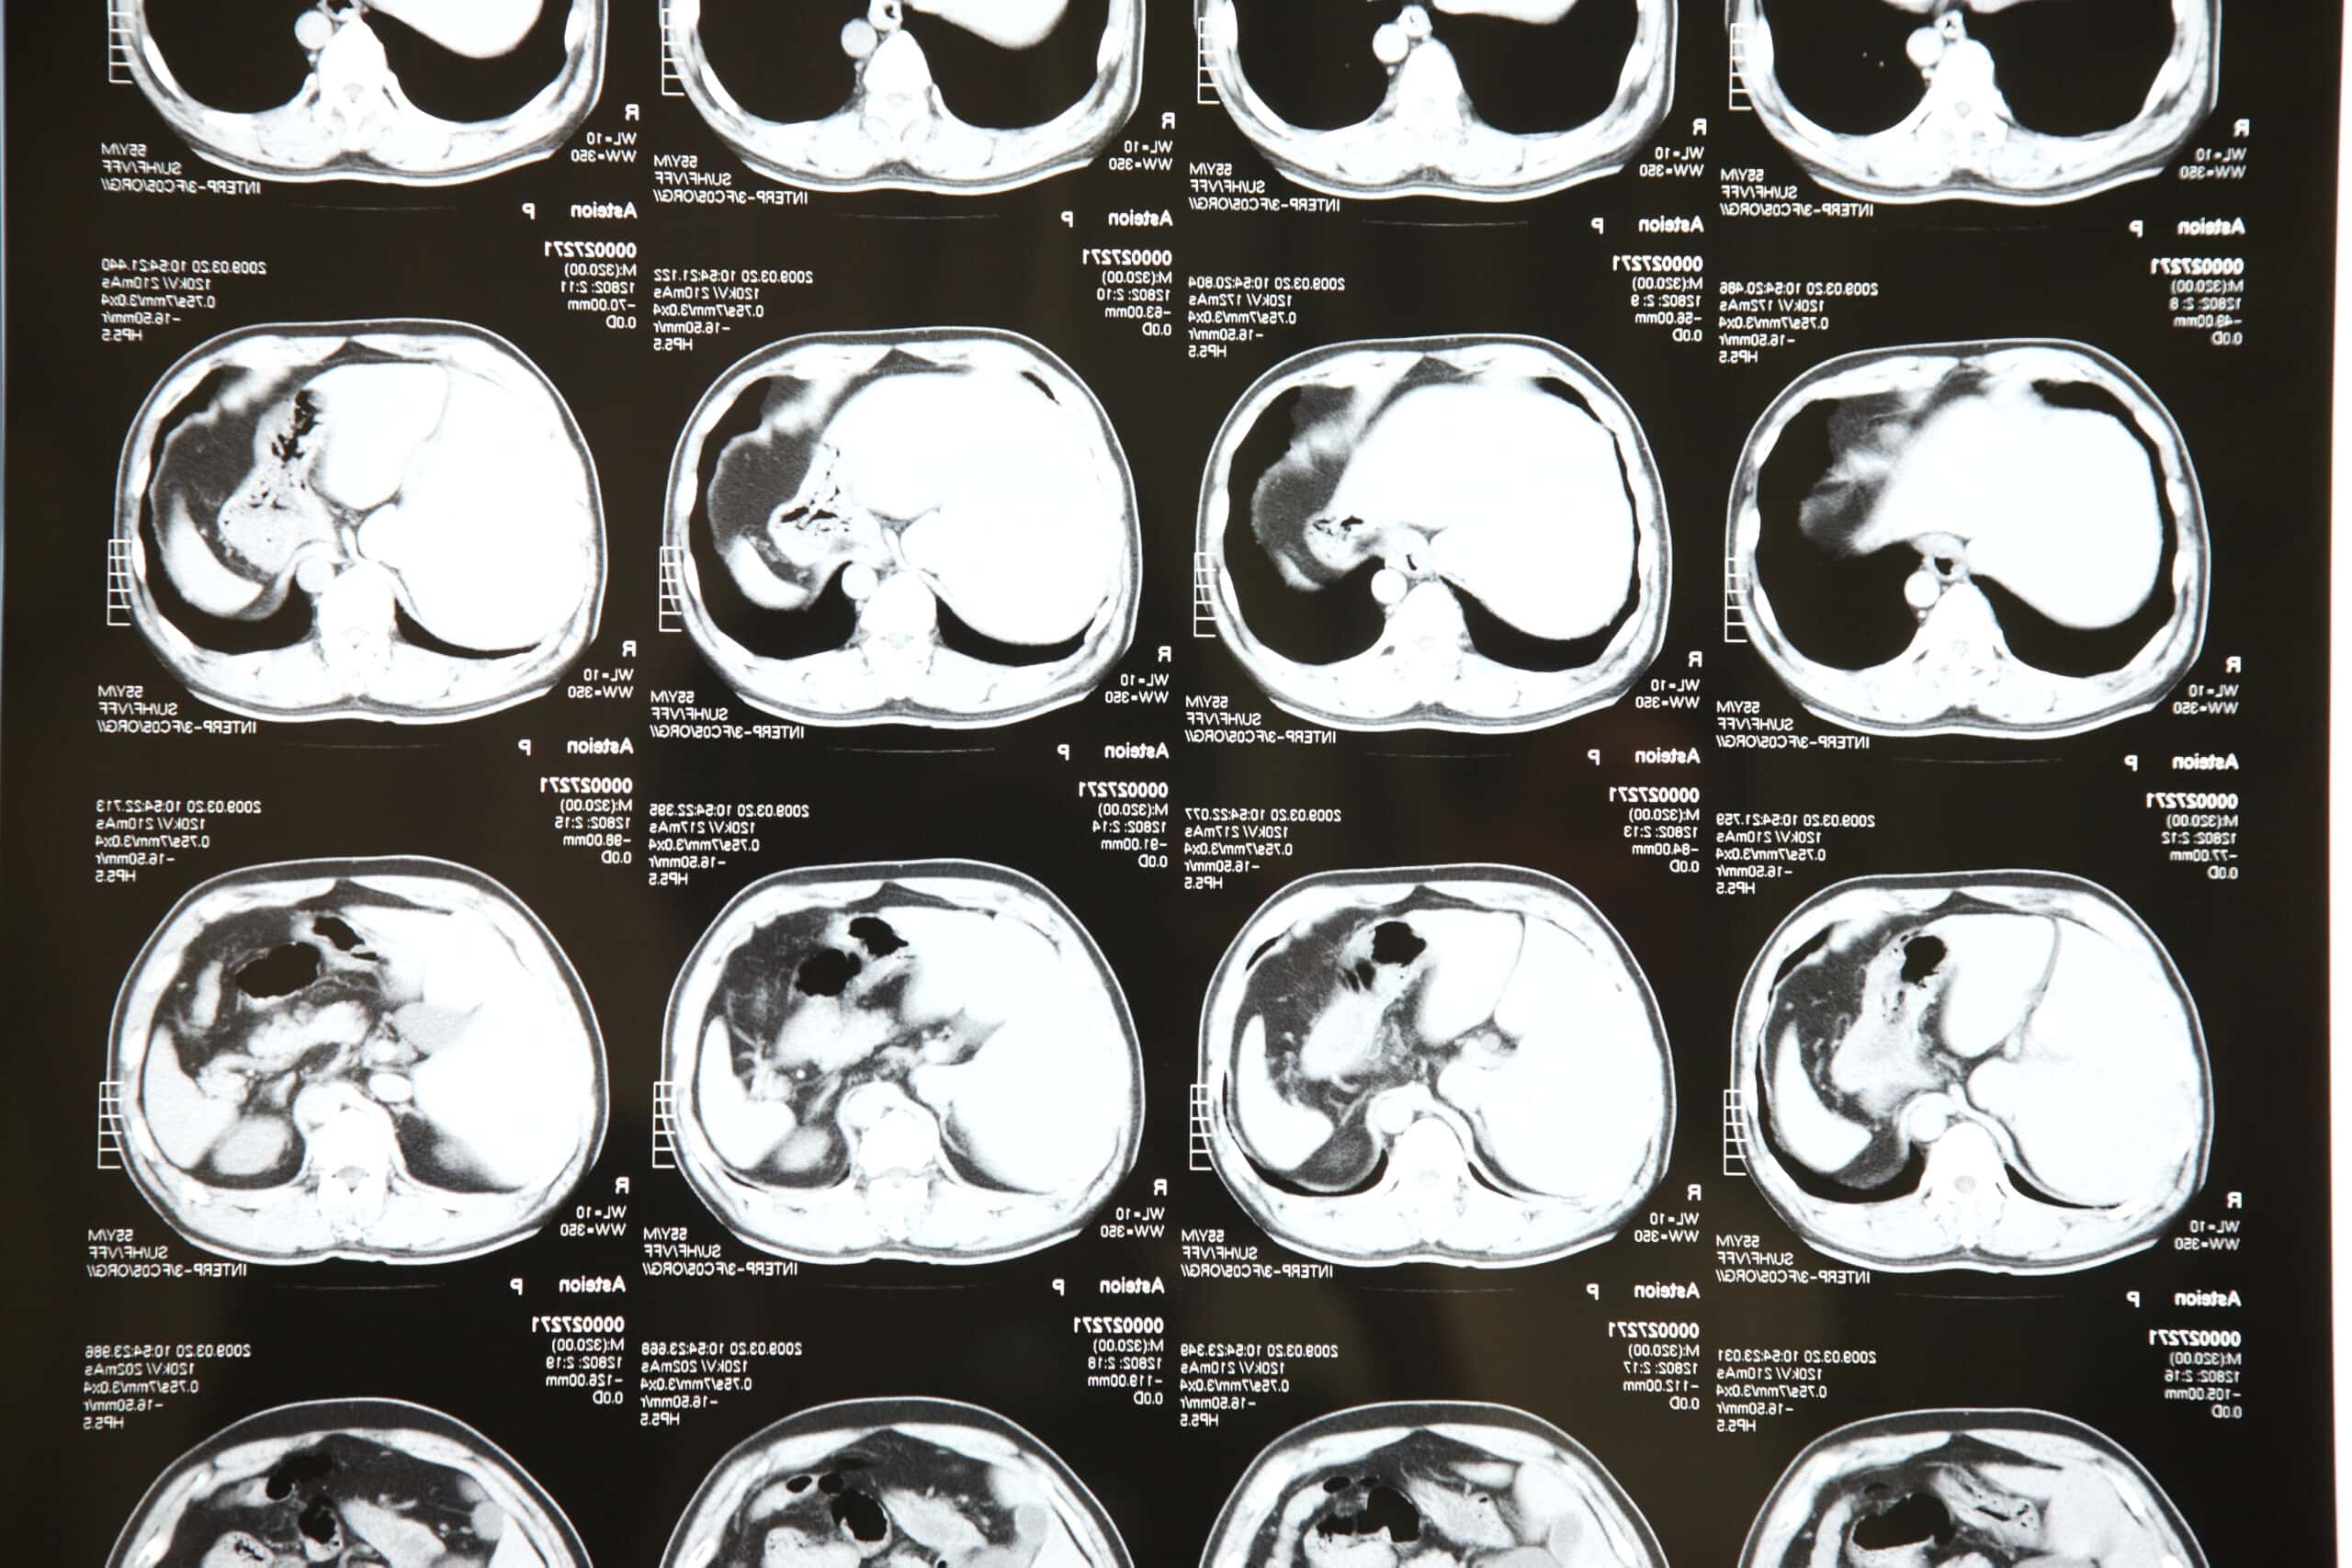 ฟิล์มเอ็กซเรย์จากเครื่องซีทีสแกน – CT Scan (Computerized Tomography)